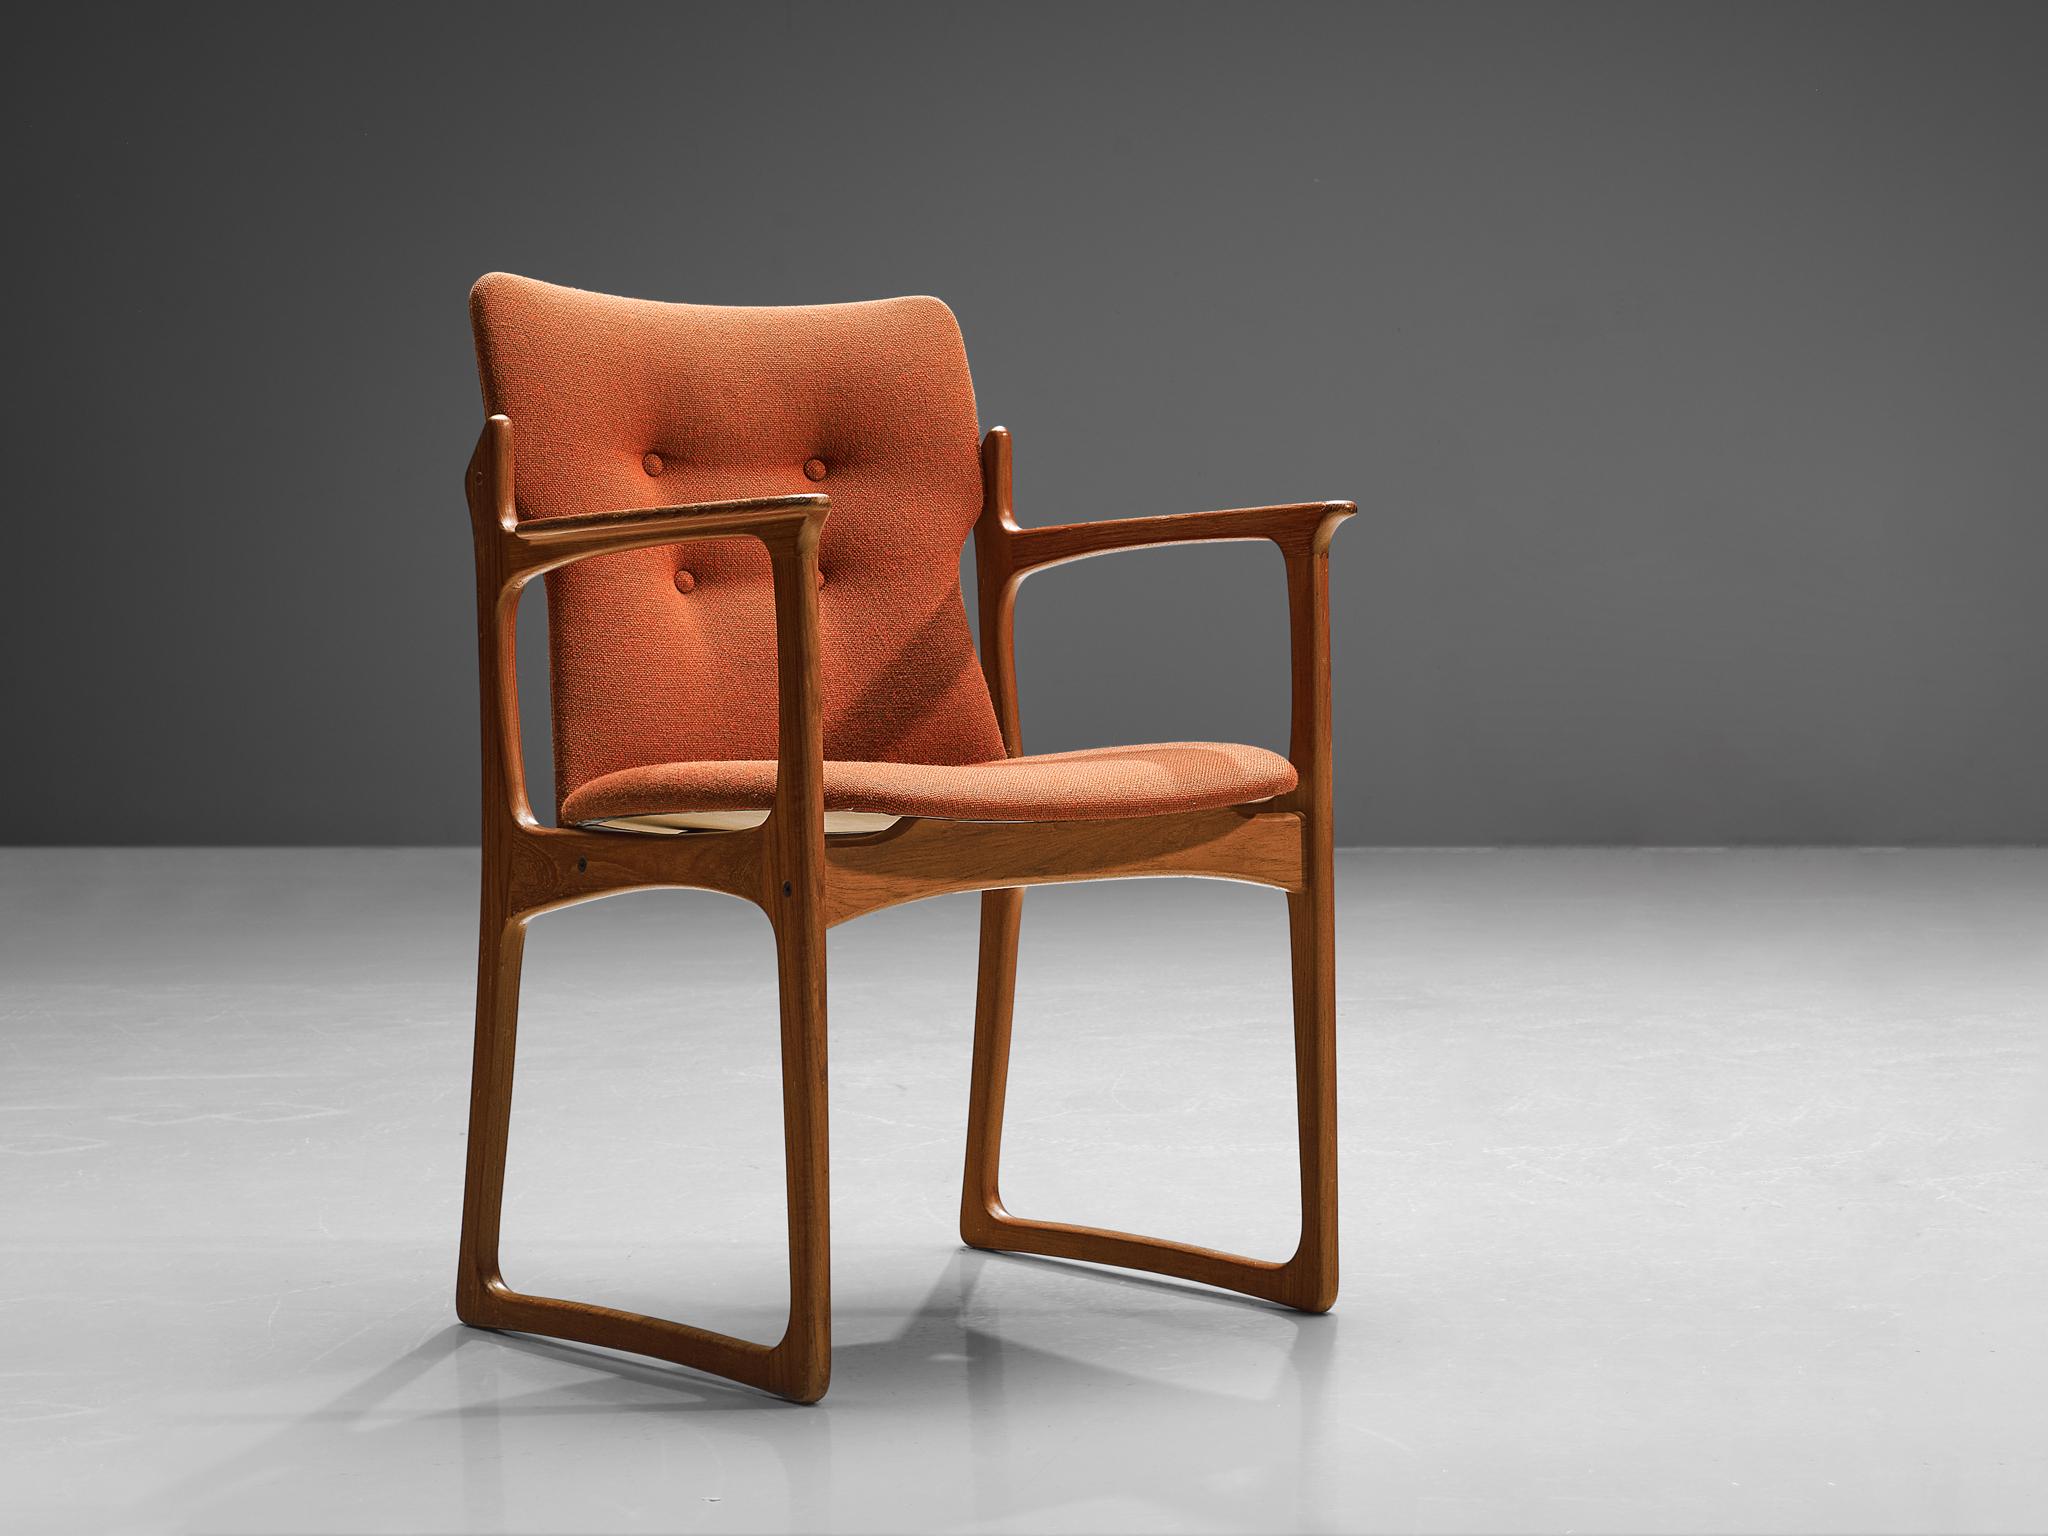 Vamdrup Stolefabrik, fauteuil modèle 'VS 231', teck et tissu orange, Danemark, années 1960. 

Le fauteuil a une structure en teck massif et soulève une belle assise en tapisserie orange d'origine. Le cadre présente des lignes subtiles et de belles